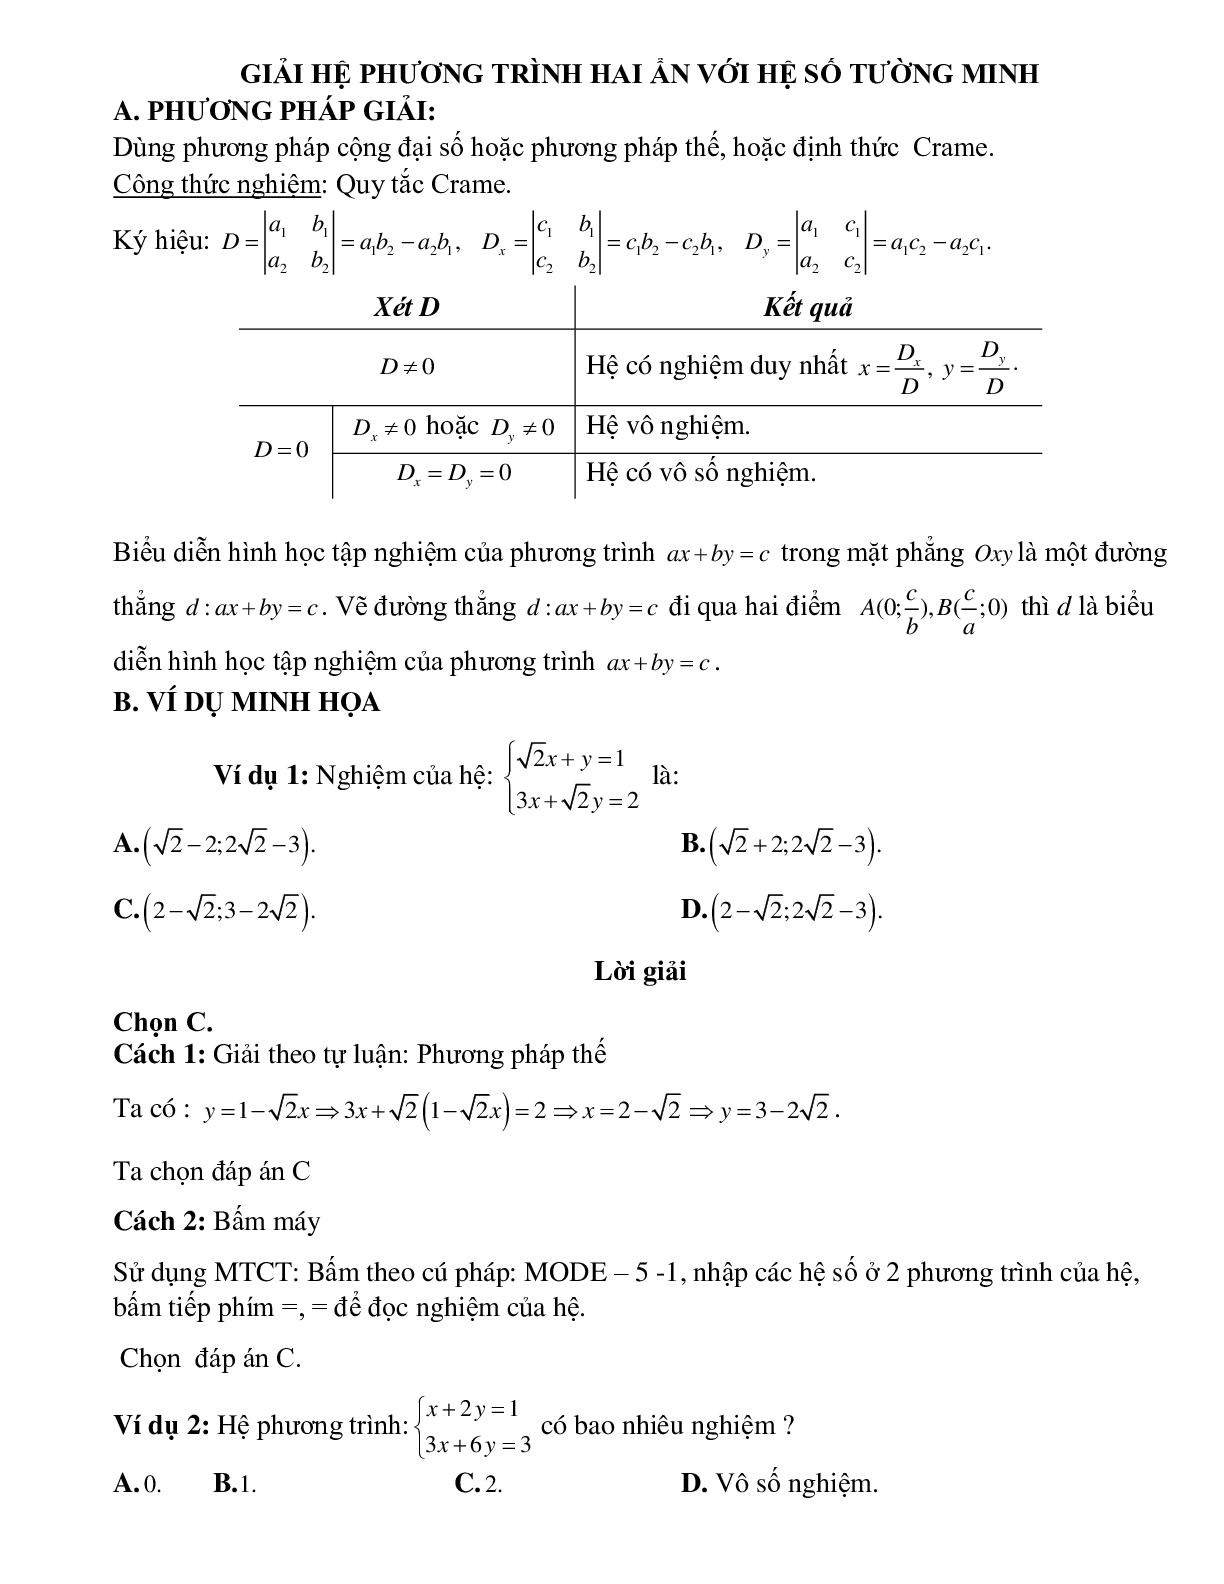 Giải hệ phương trình hai ẩn với hệ số tường minh (trang 1)